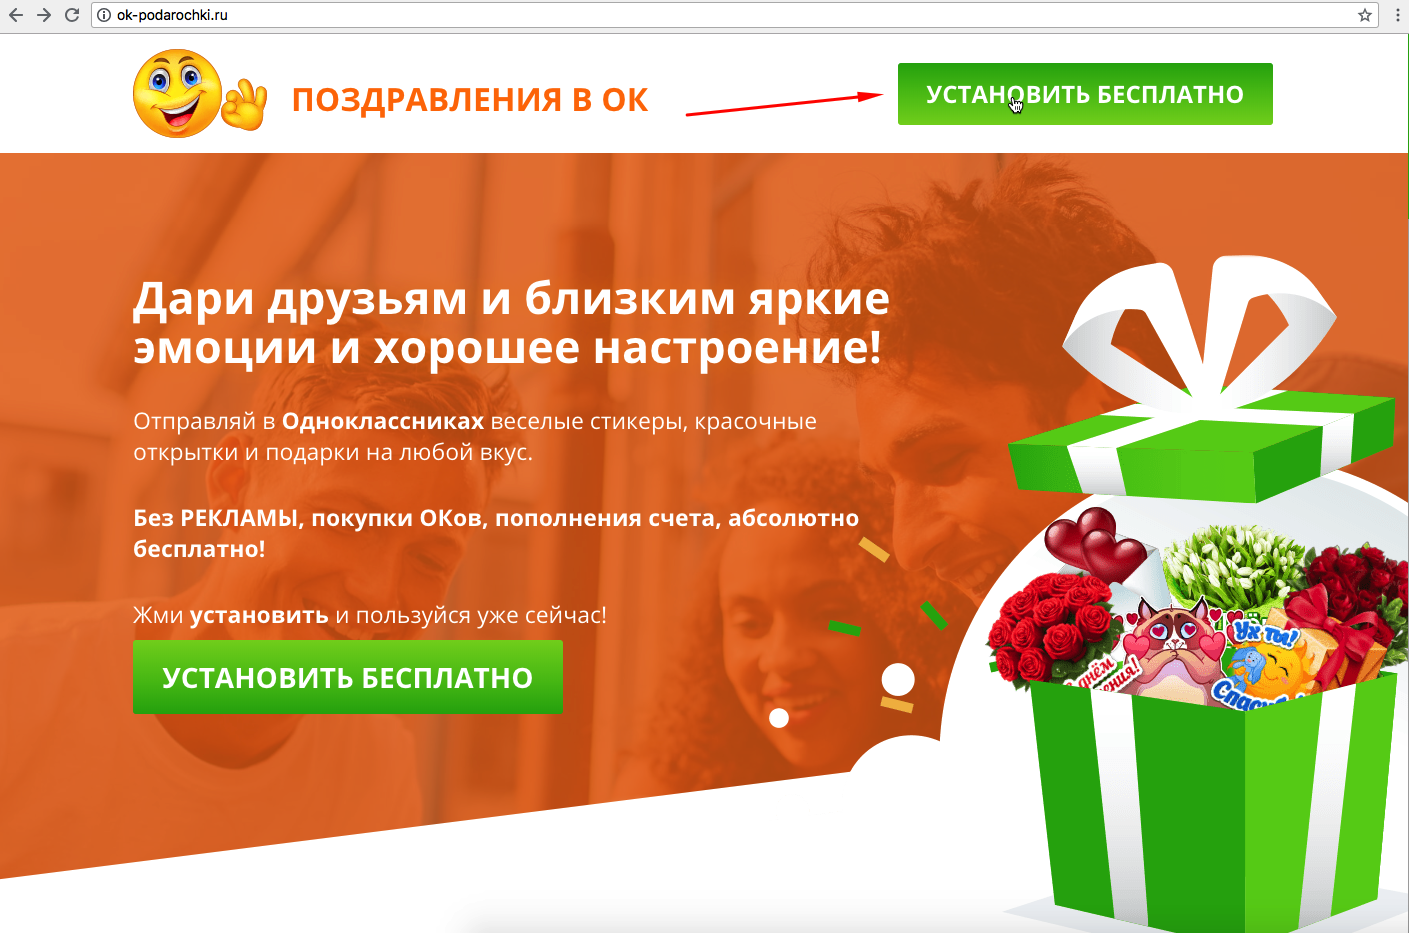 Бесплатный подарок подписка. Бесплатные подарки. Подарки ок. Подарки на сайте Одноклассники.